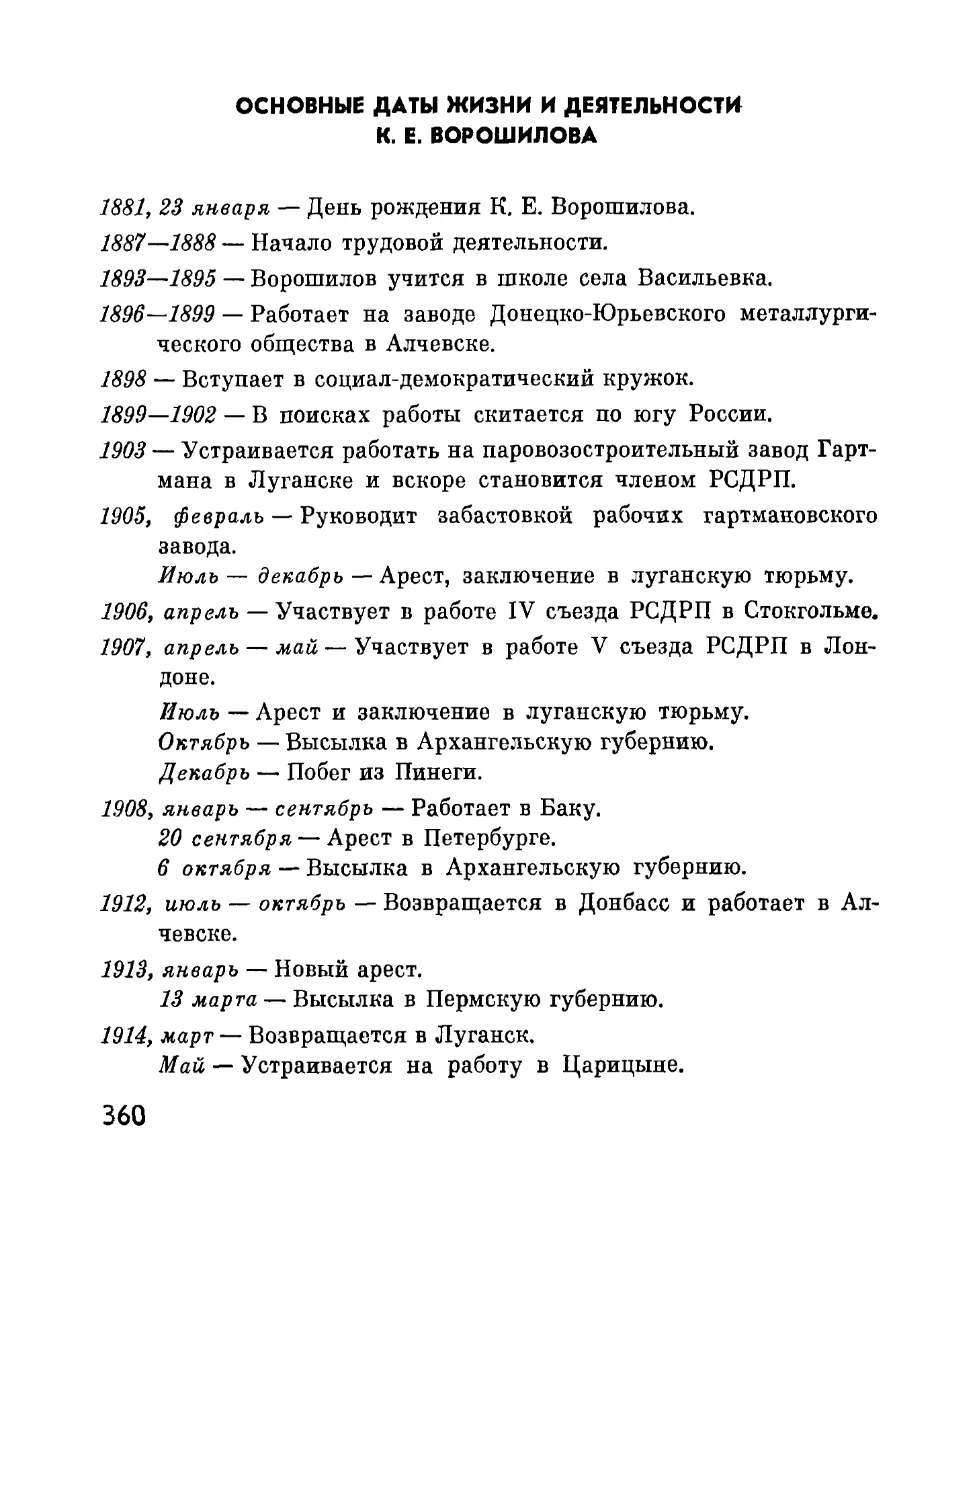 Основные даты жизни и деятельности К.Е. Ворошилова